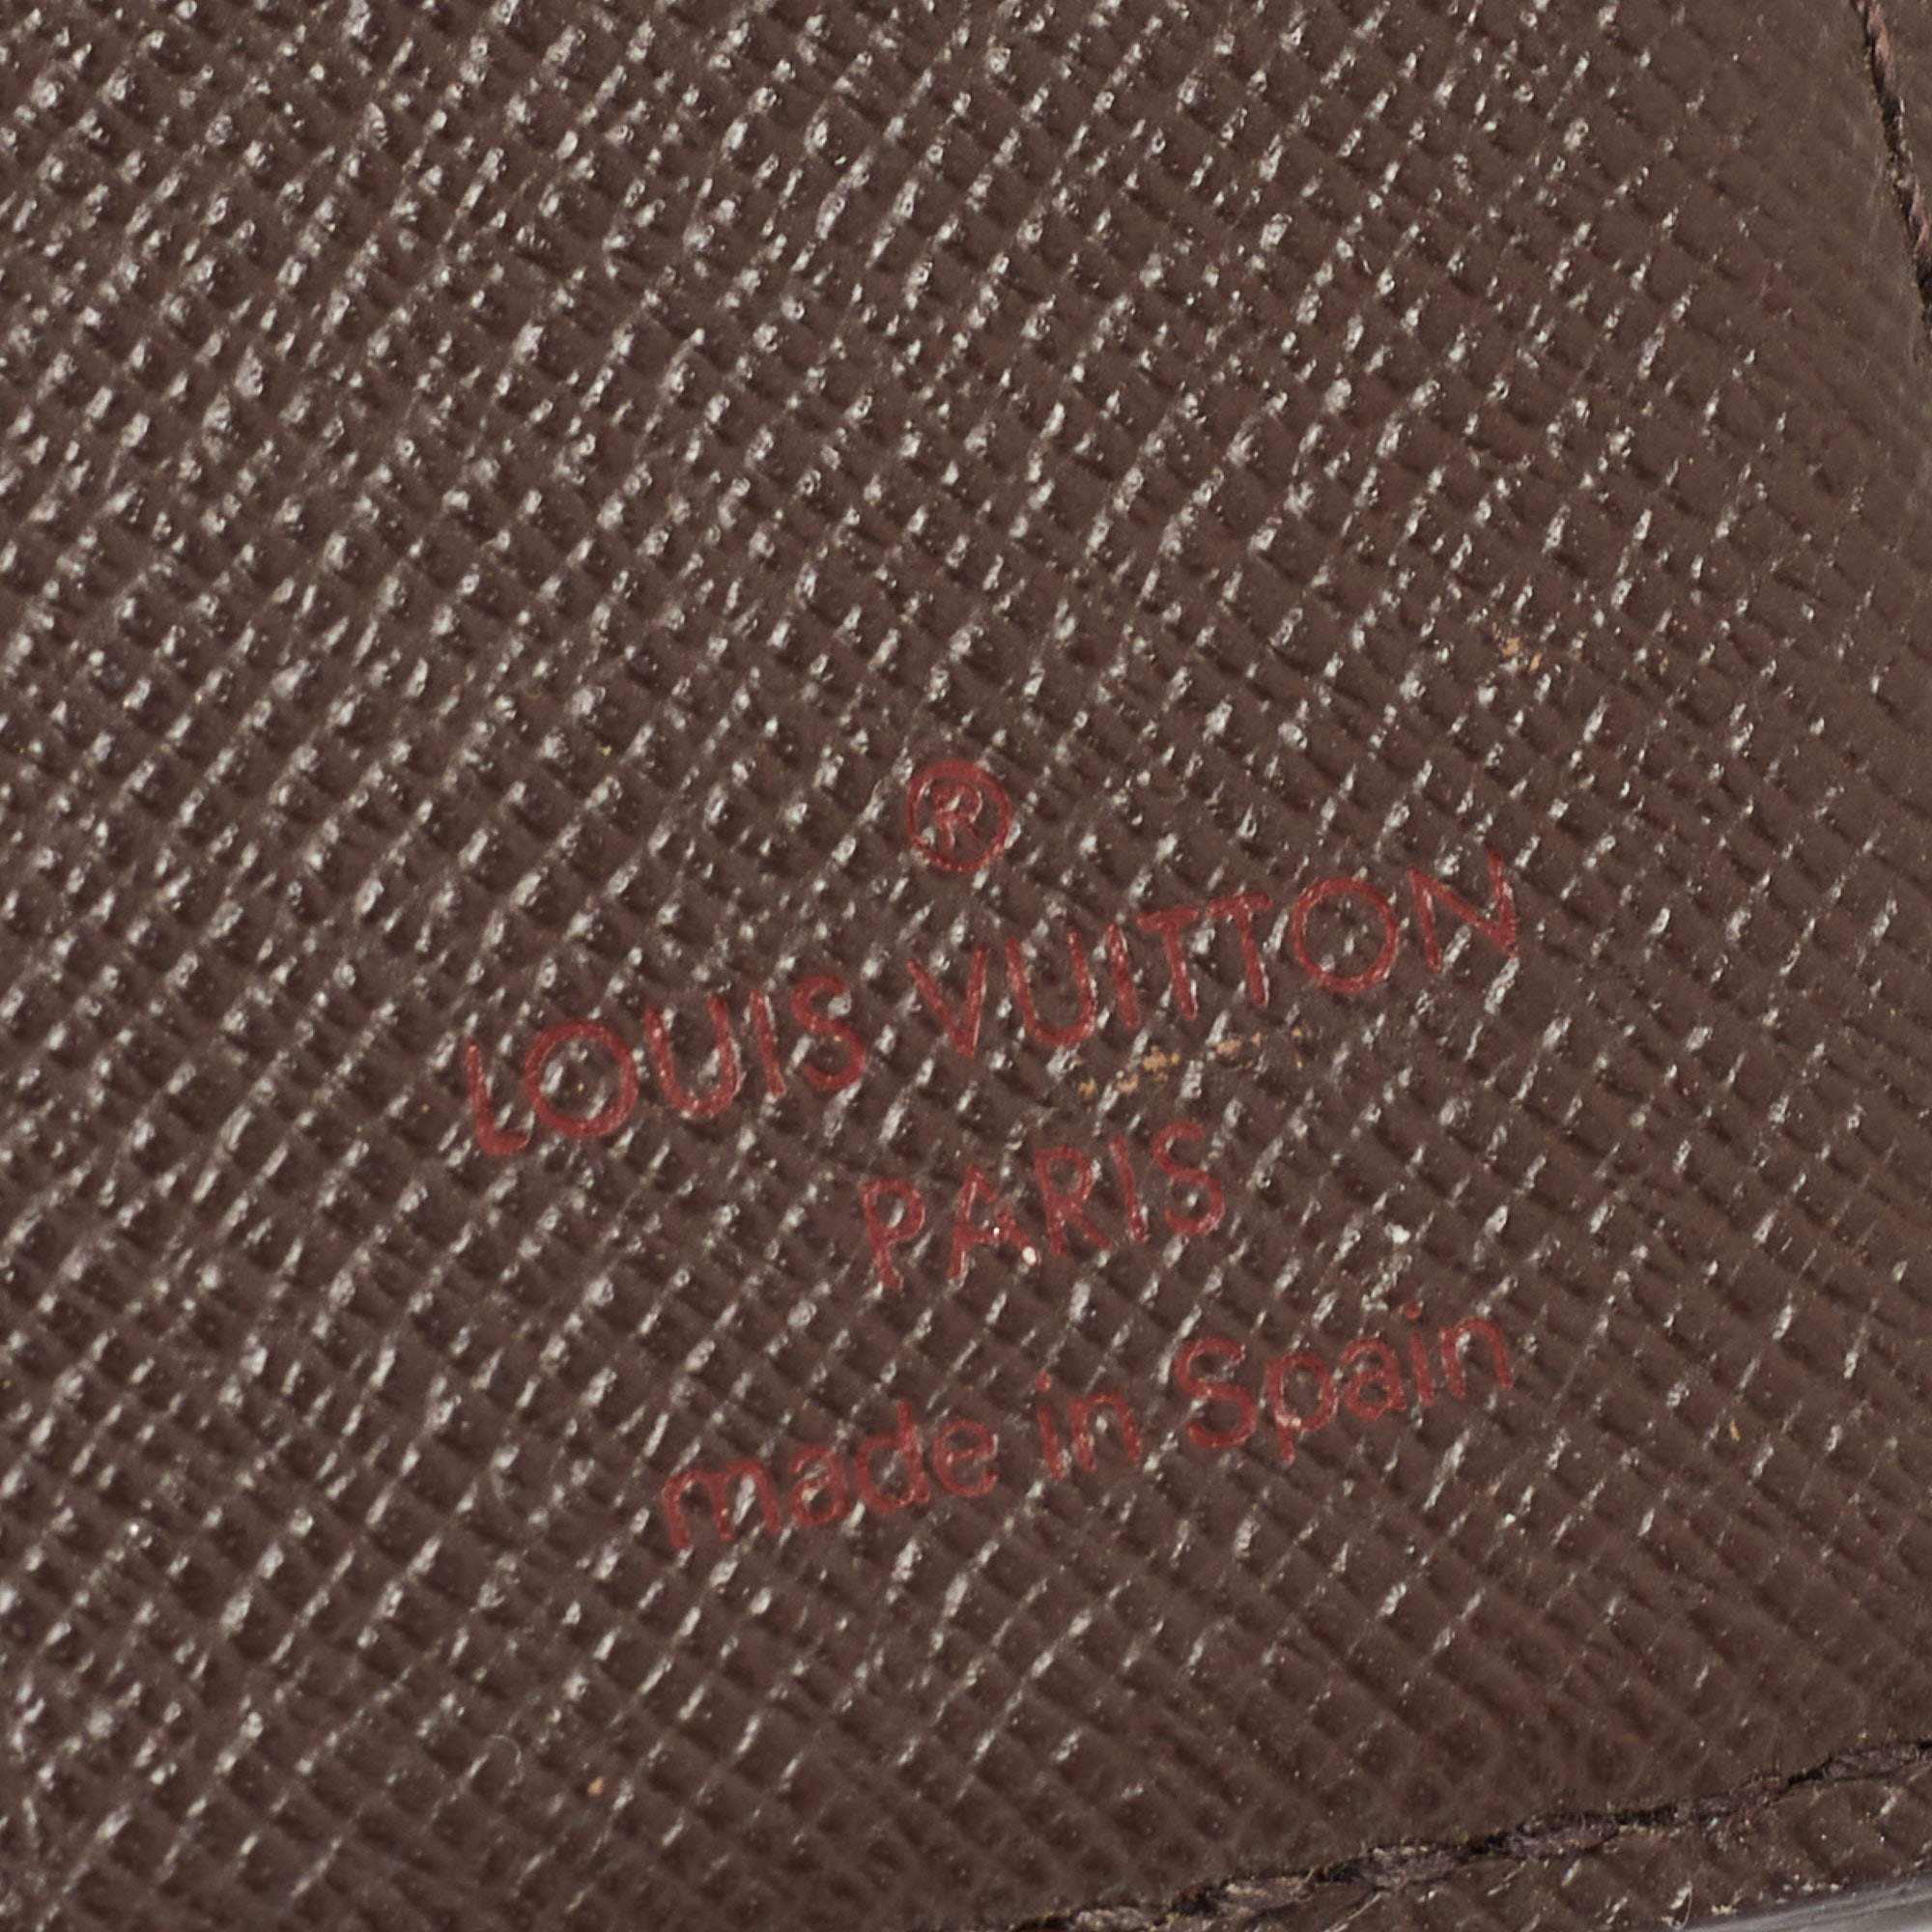 Louis Vuitton Damier Ebene Canvas Marco Wallet Louis Vuitton | The Luxury  Closet